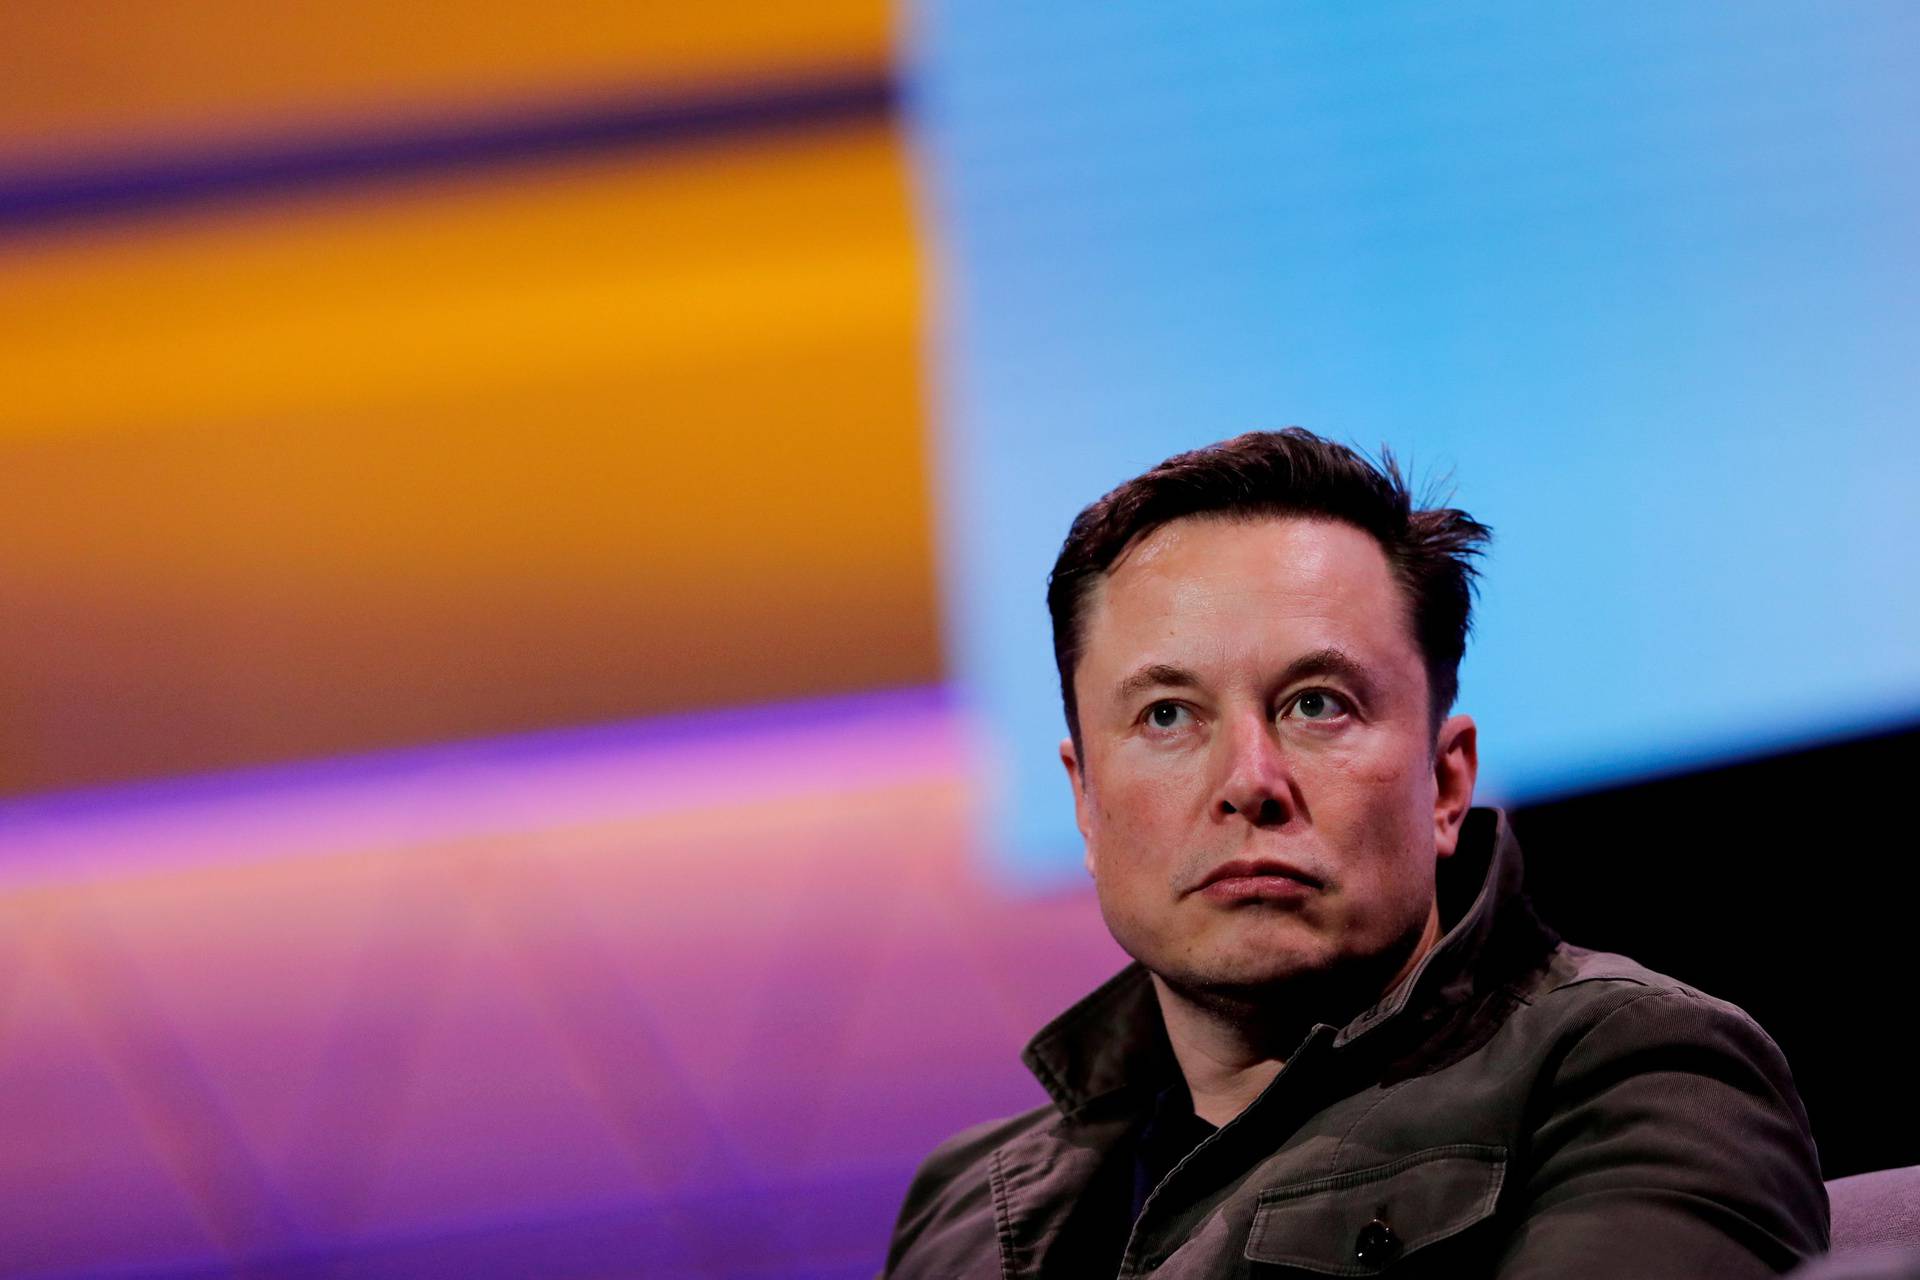 Elon Musk kupao se bez majice, na Twitteru zgroženi njegovim izgledom: Nisam to htio vidjeti